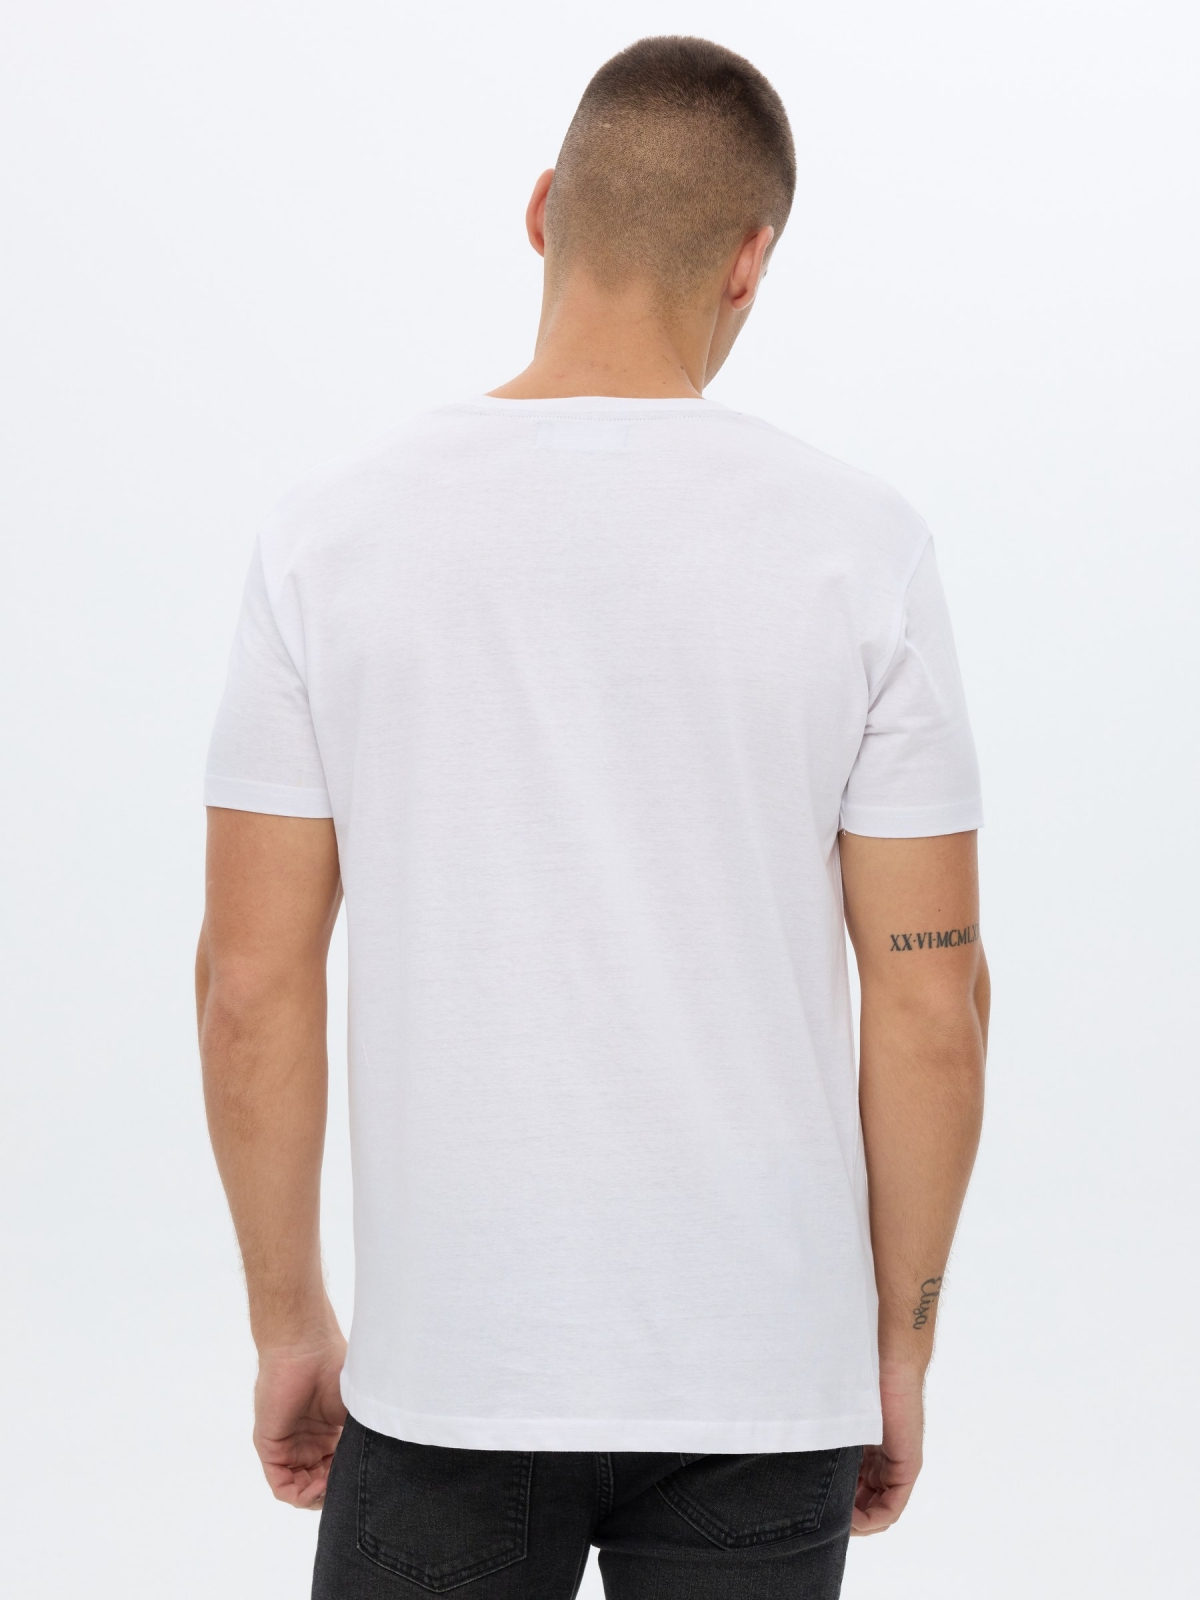 Camiseta estampado calavera blanco vista media trasera